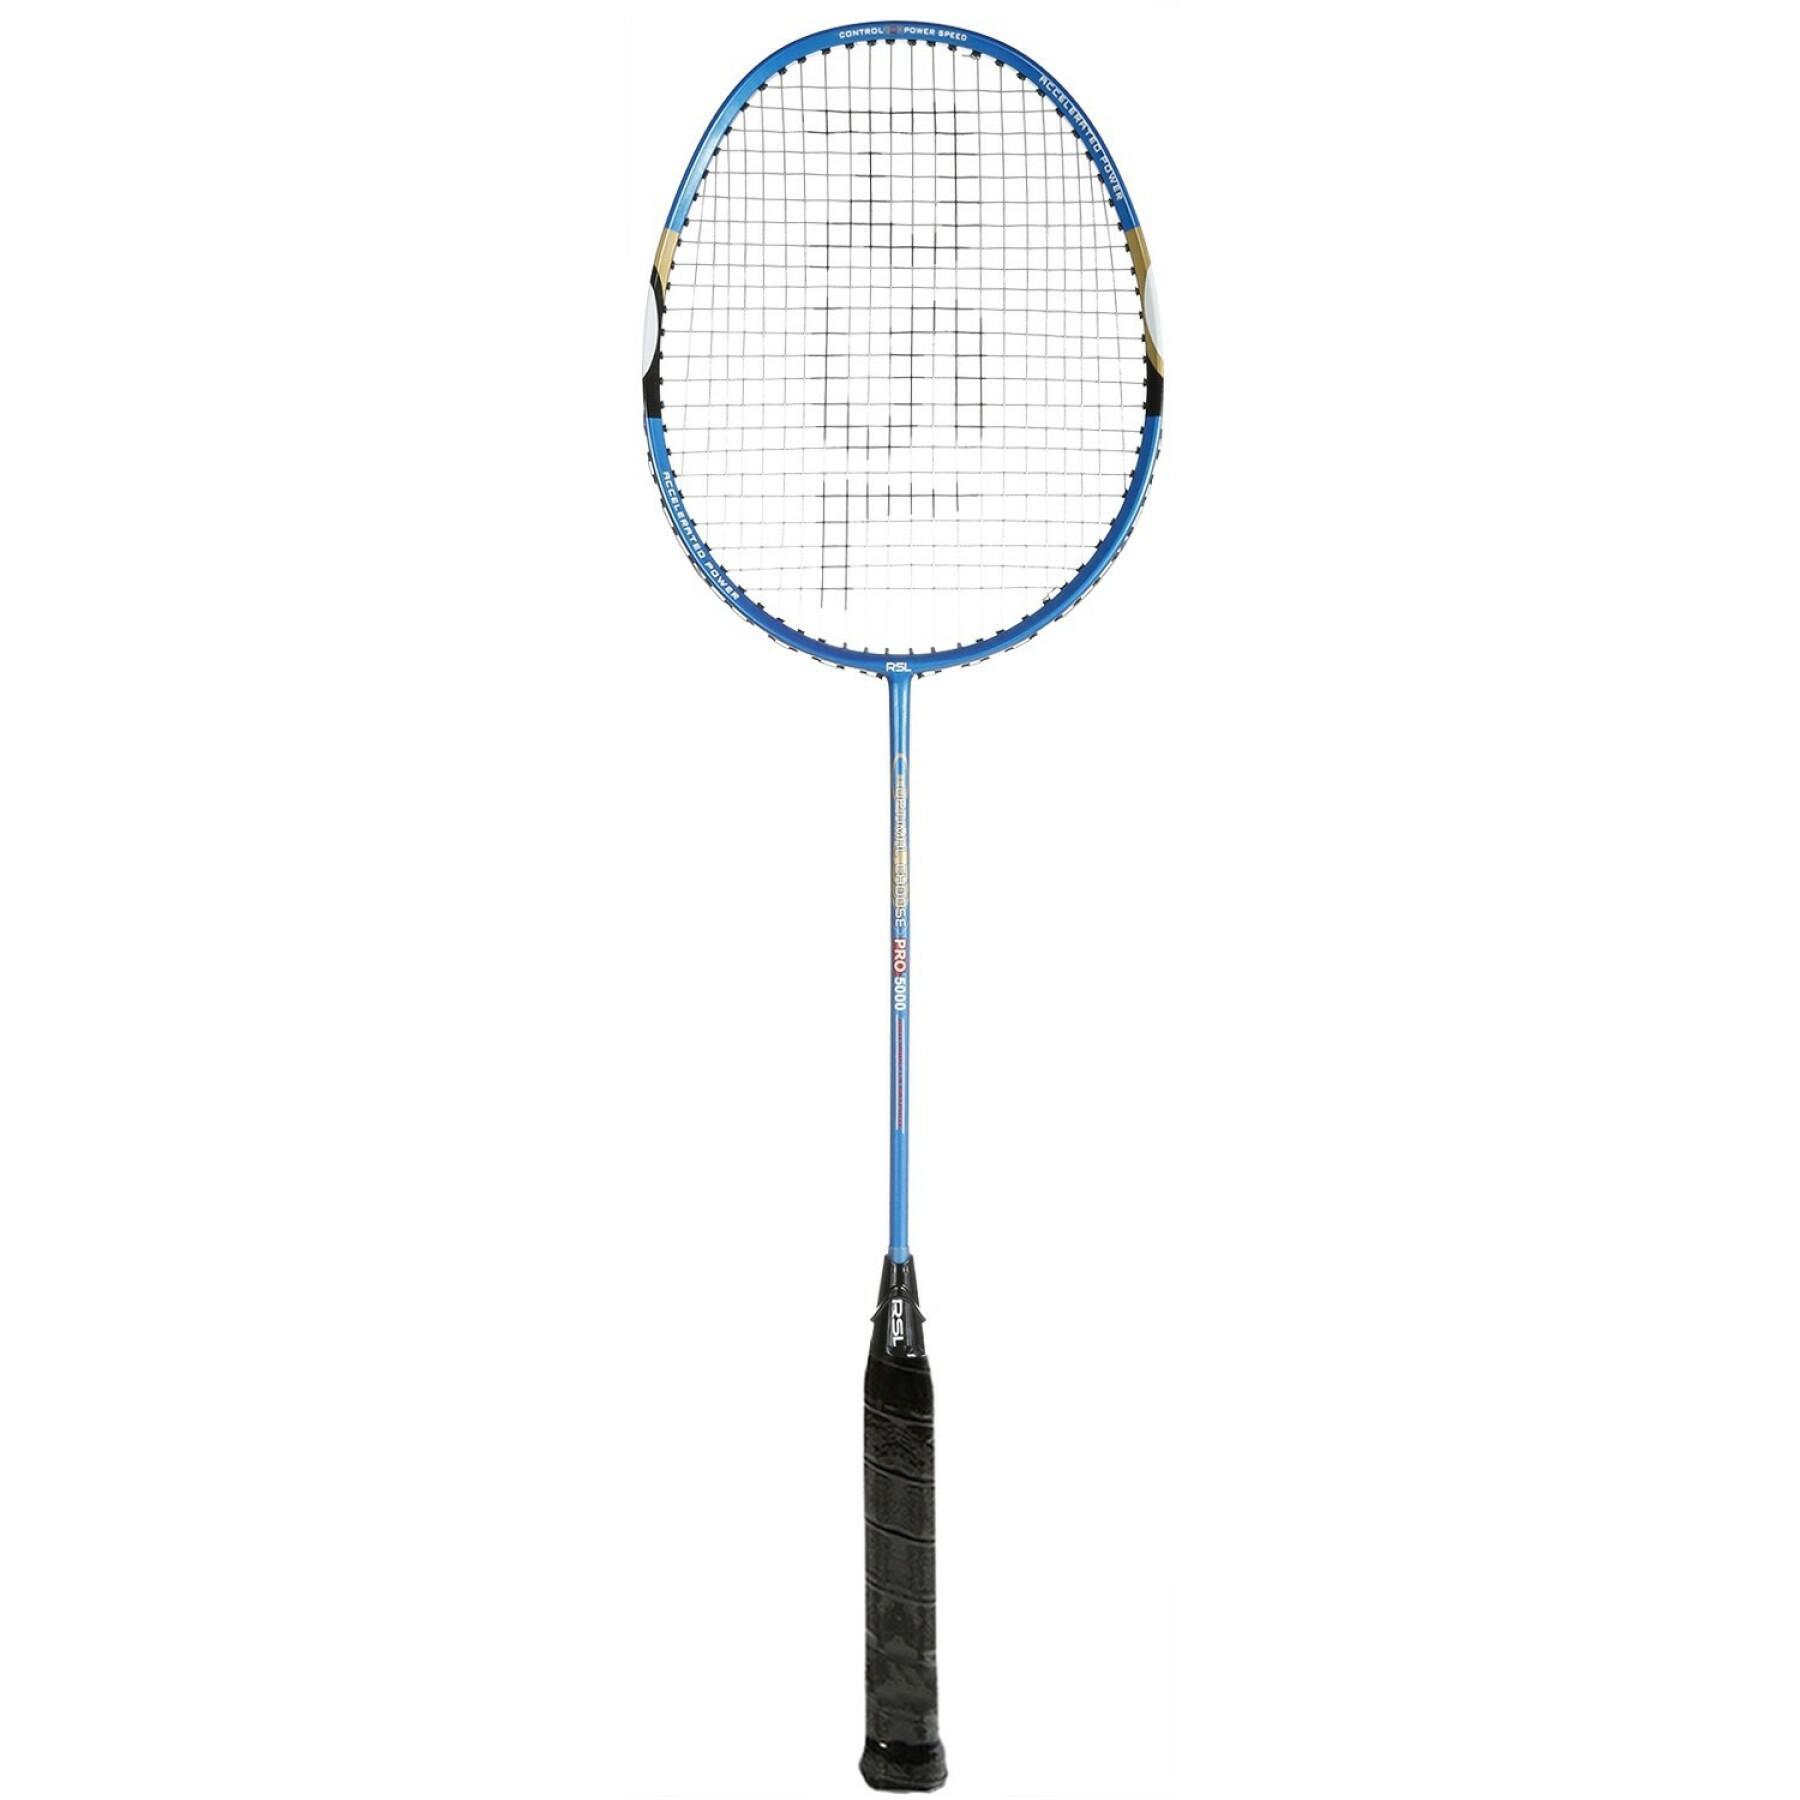 Badmintonschläger RSL Pro